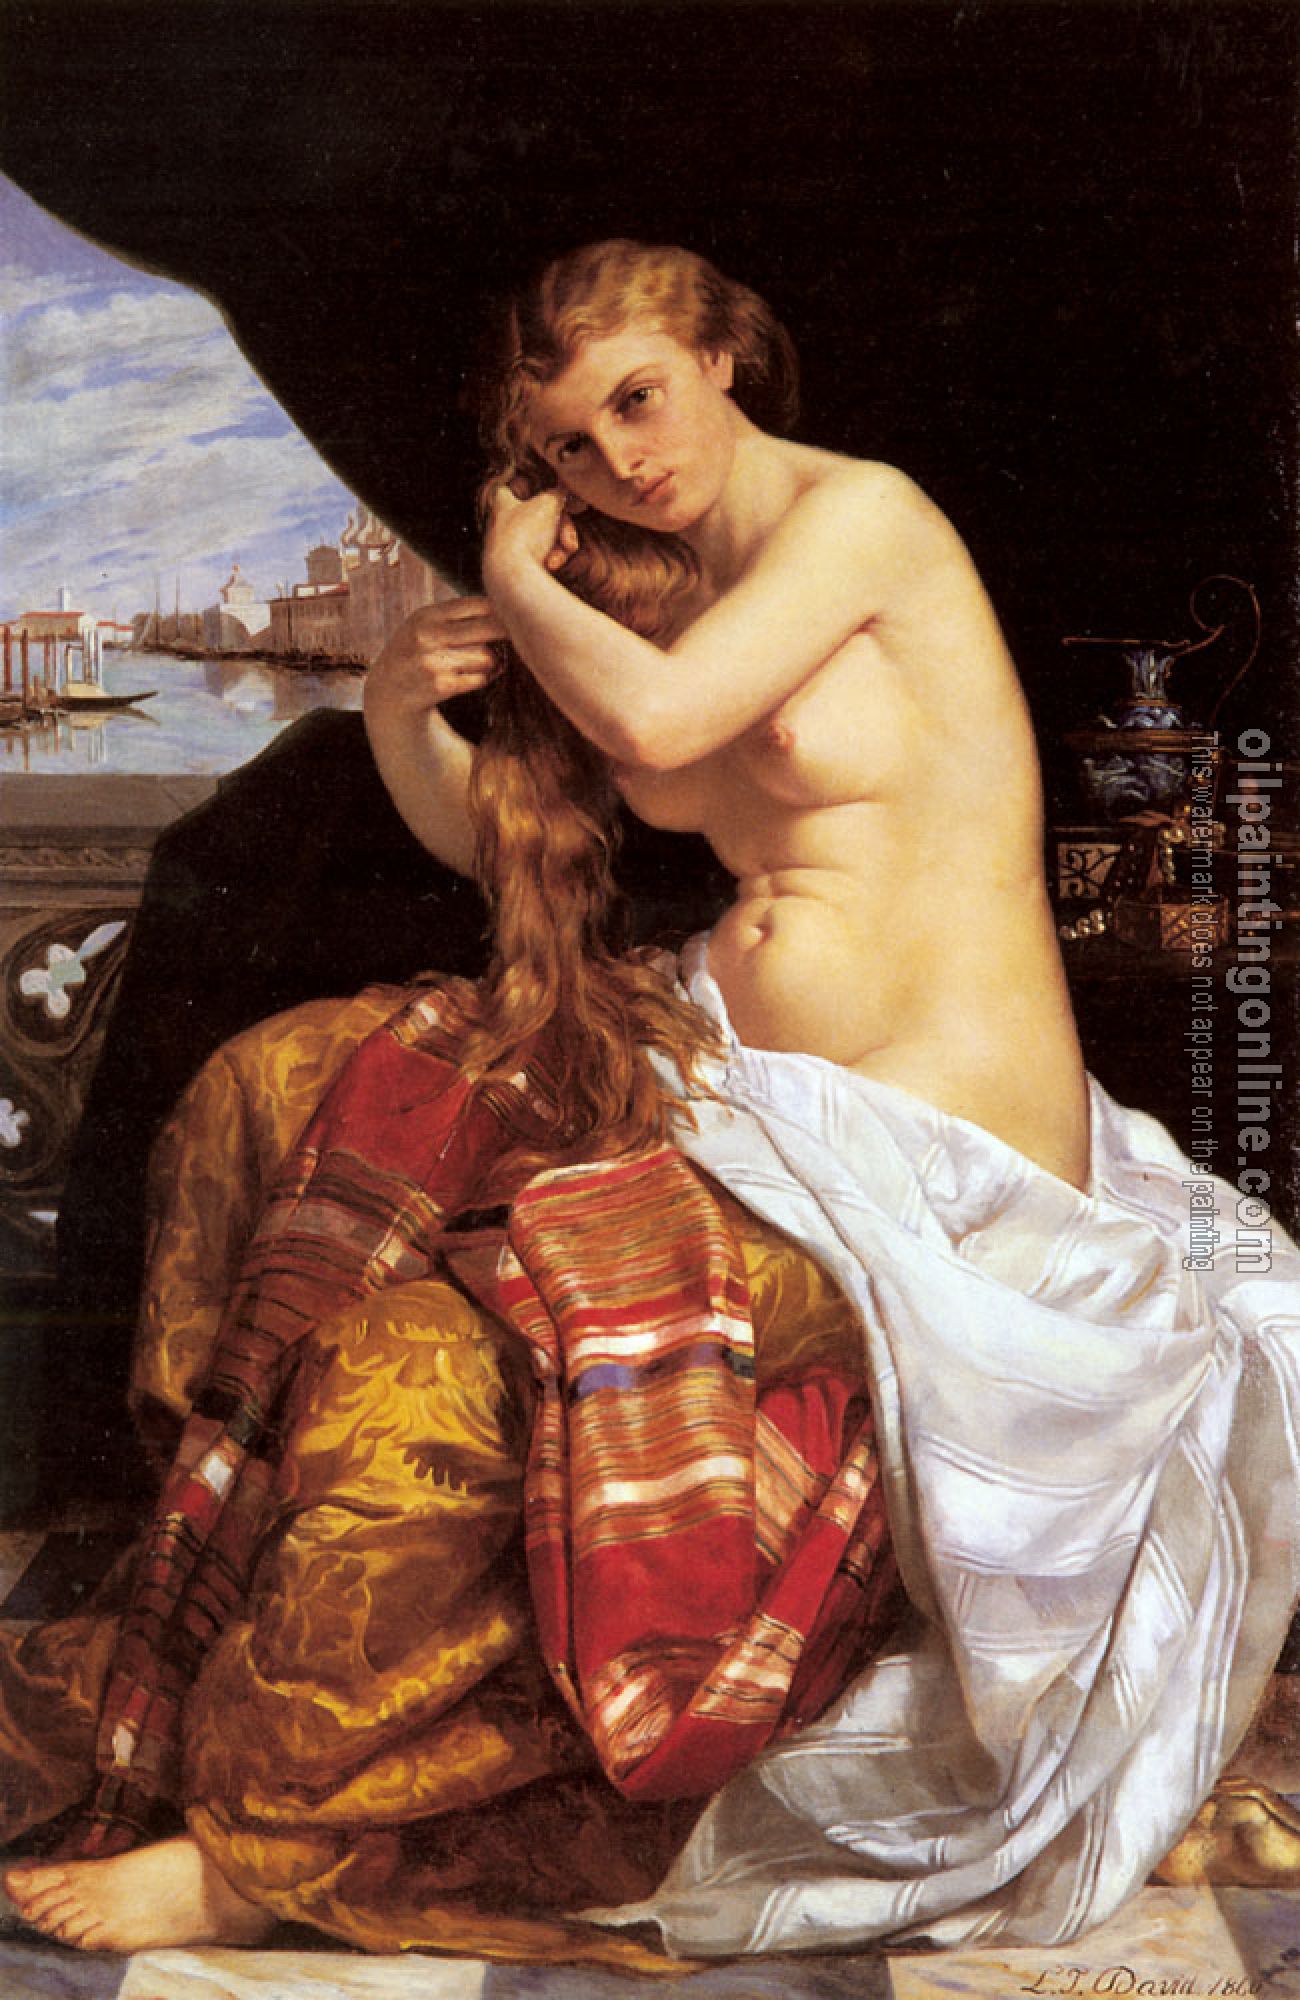 David, Jacques-Louis - Venitienne A Sa Toilette( Venetian Lady at Her Toilette)